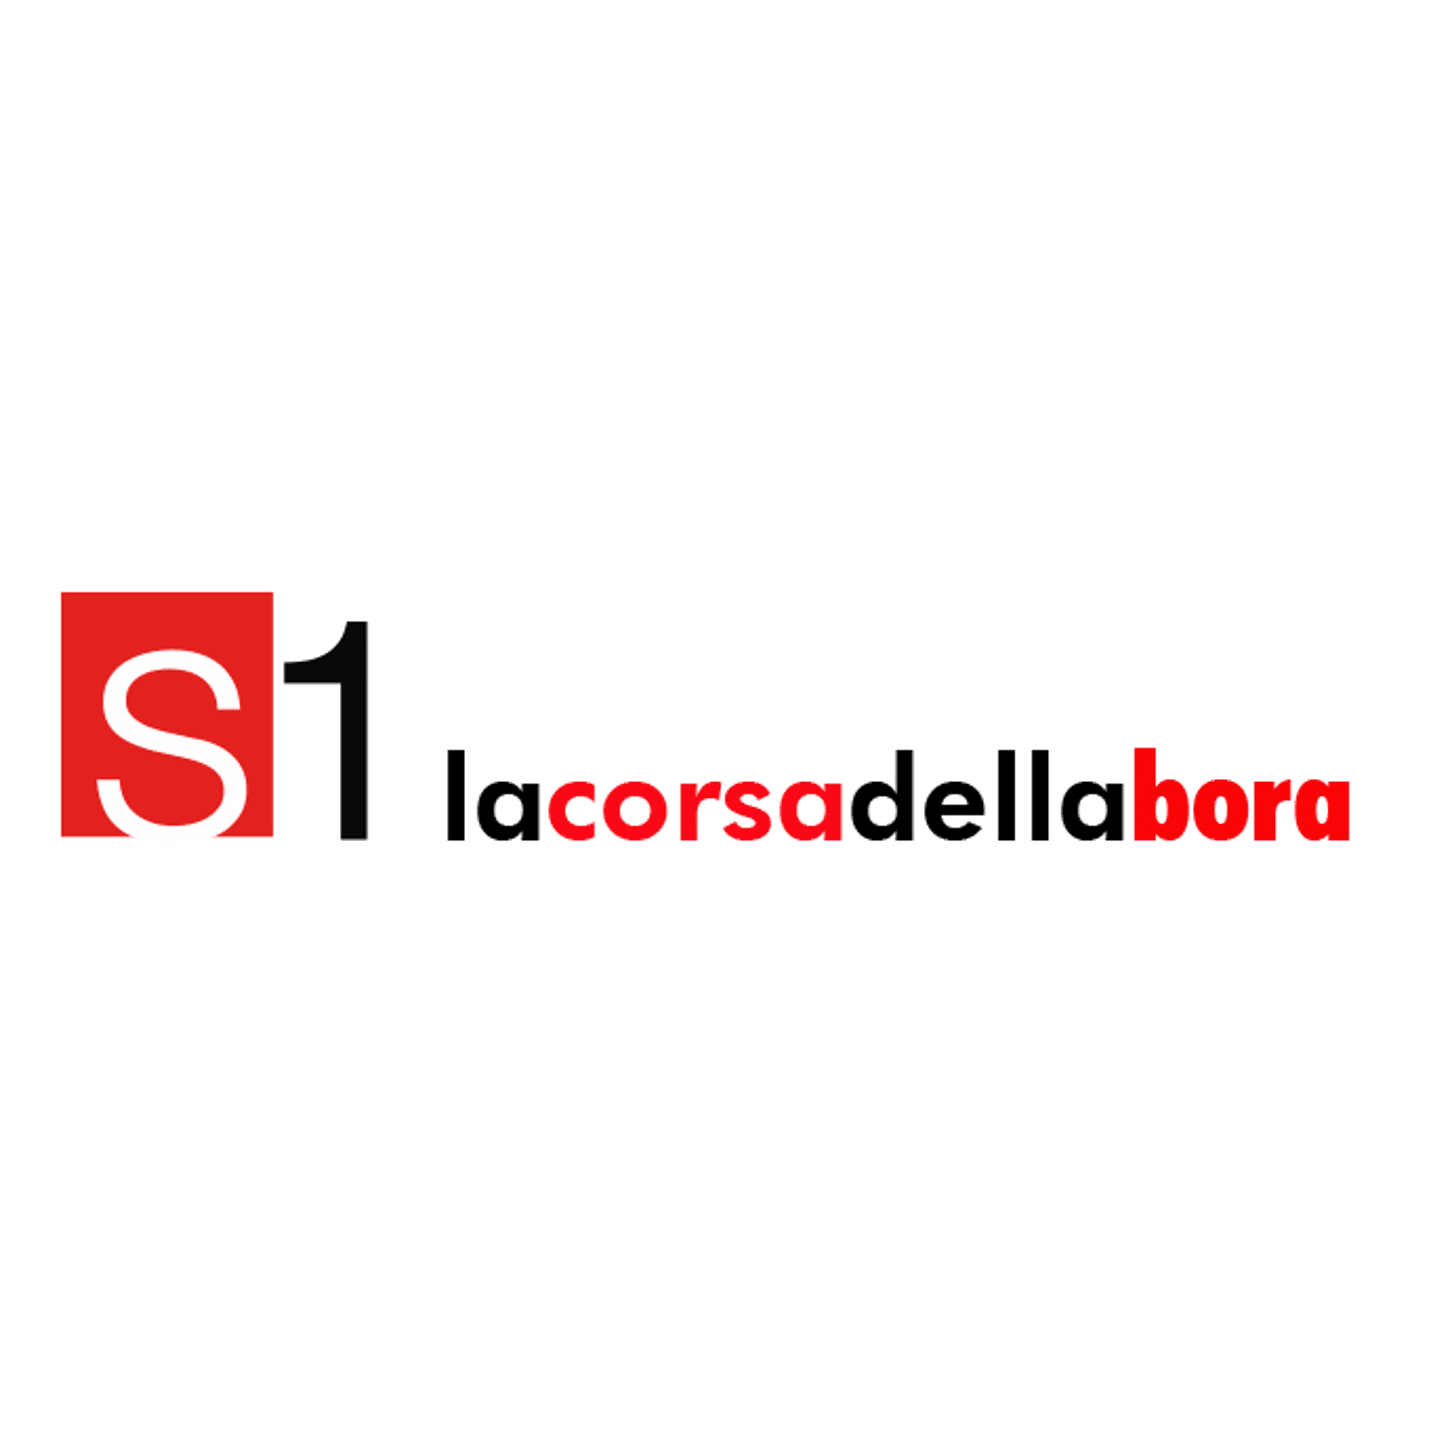 Logo-S1 Trail La Corsa Della Bora